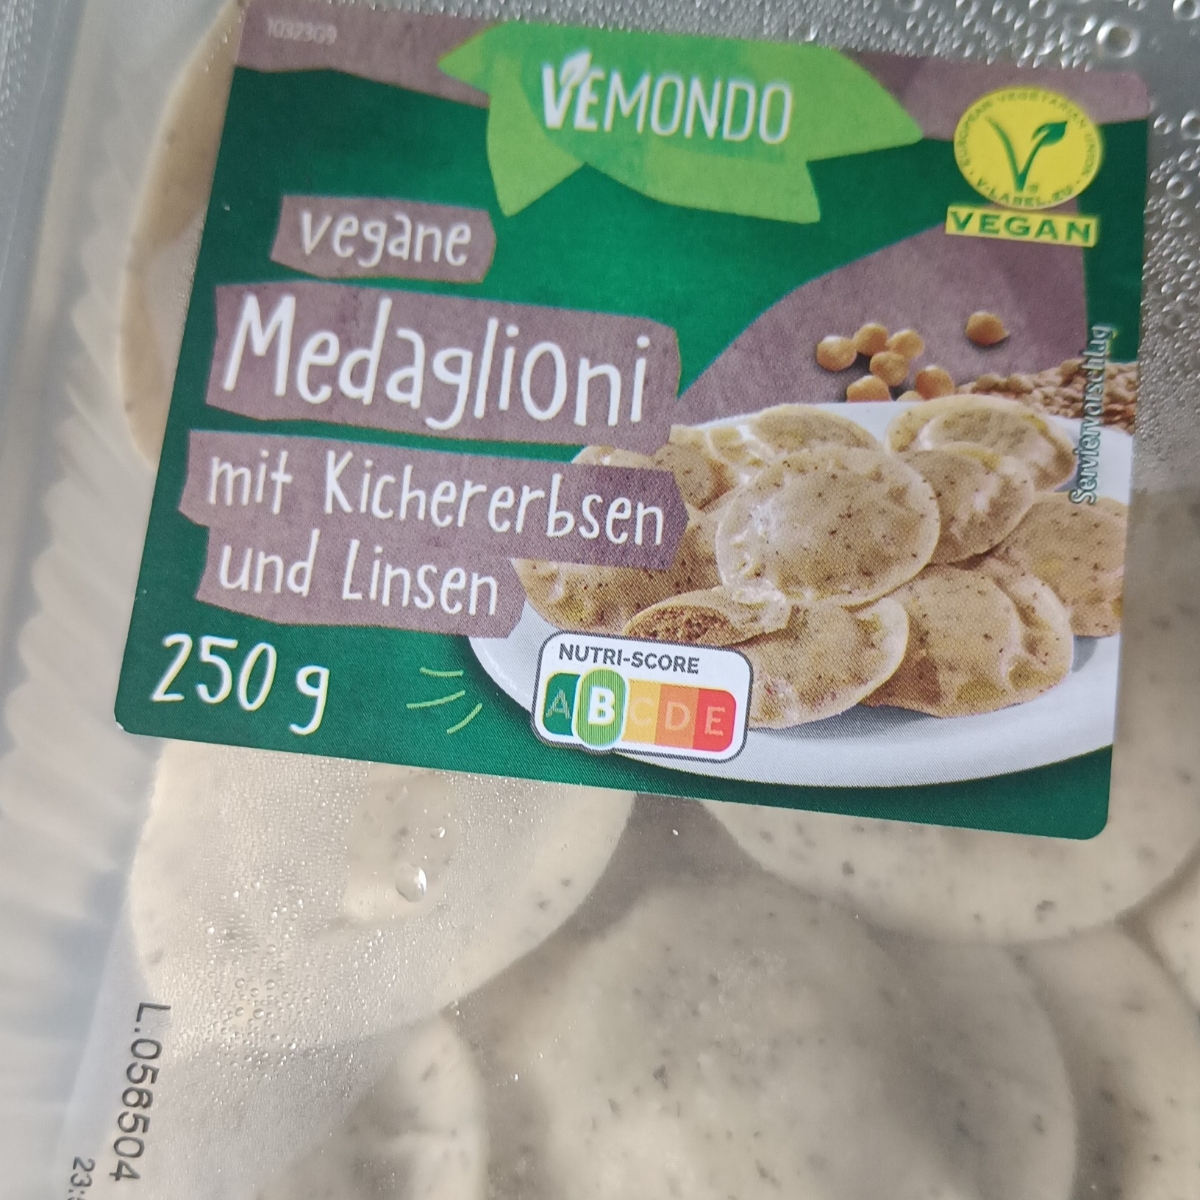 Vegane Medaglioni Vemondo Kichererbsen Review | Linsen und mit abillion